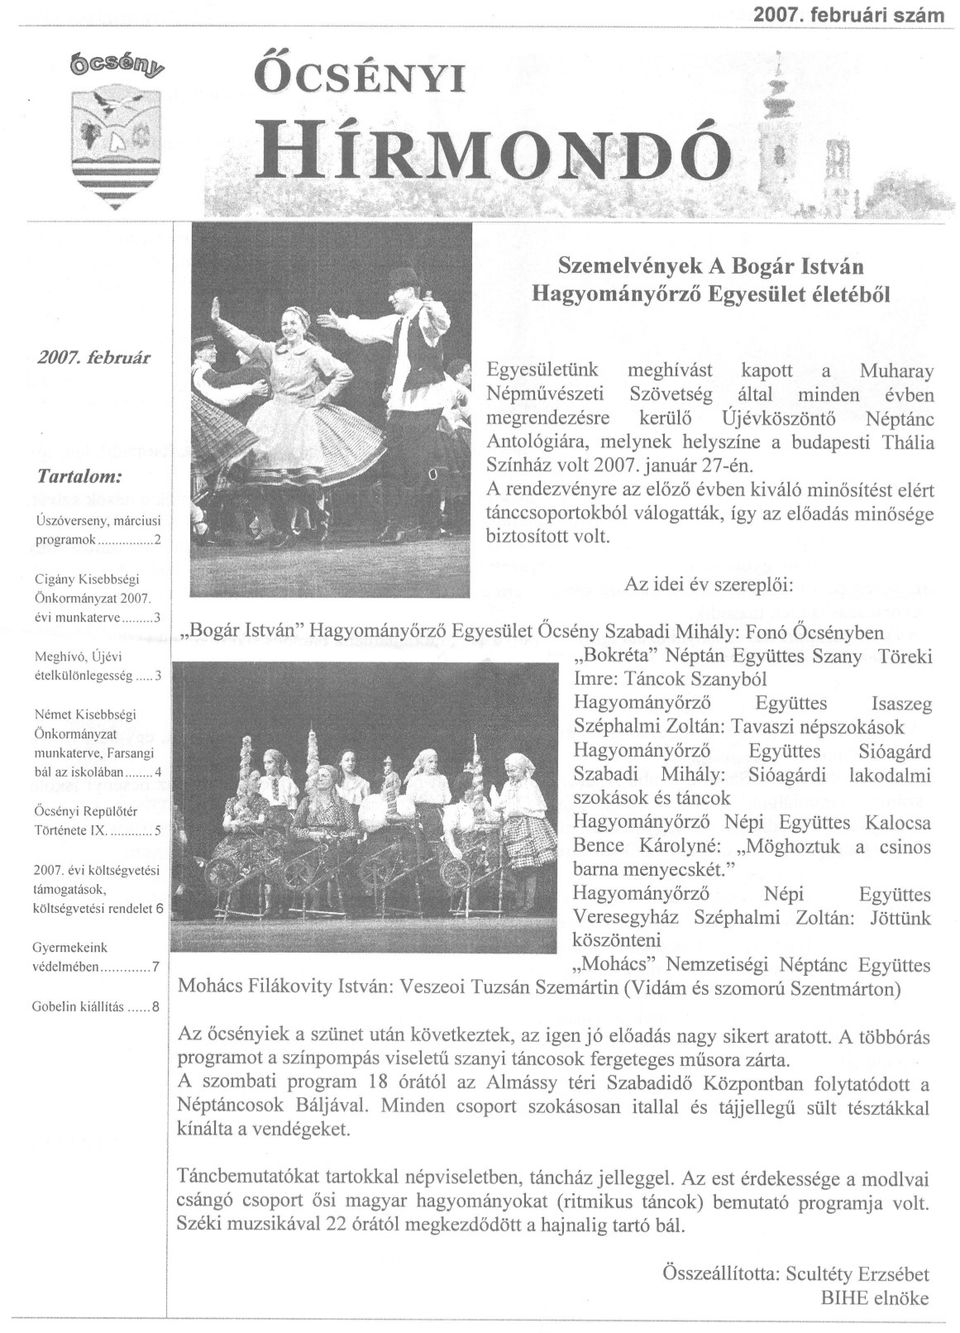 melynek helyszíne a budapesti Thália Színház volt 2007. január 27-én. A rendezvényre az elozo évben kiváló minosítést elért tánccsoportokból biztosított volt.